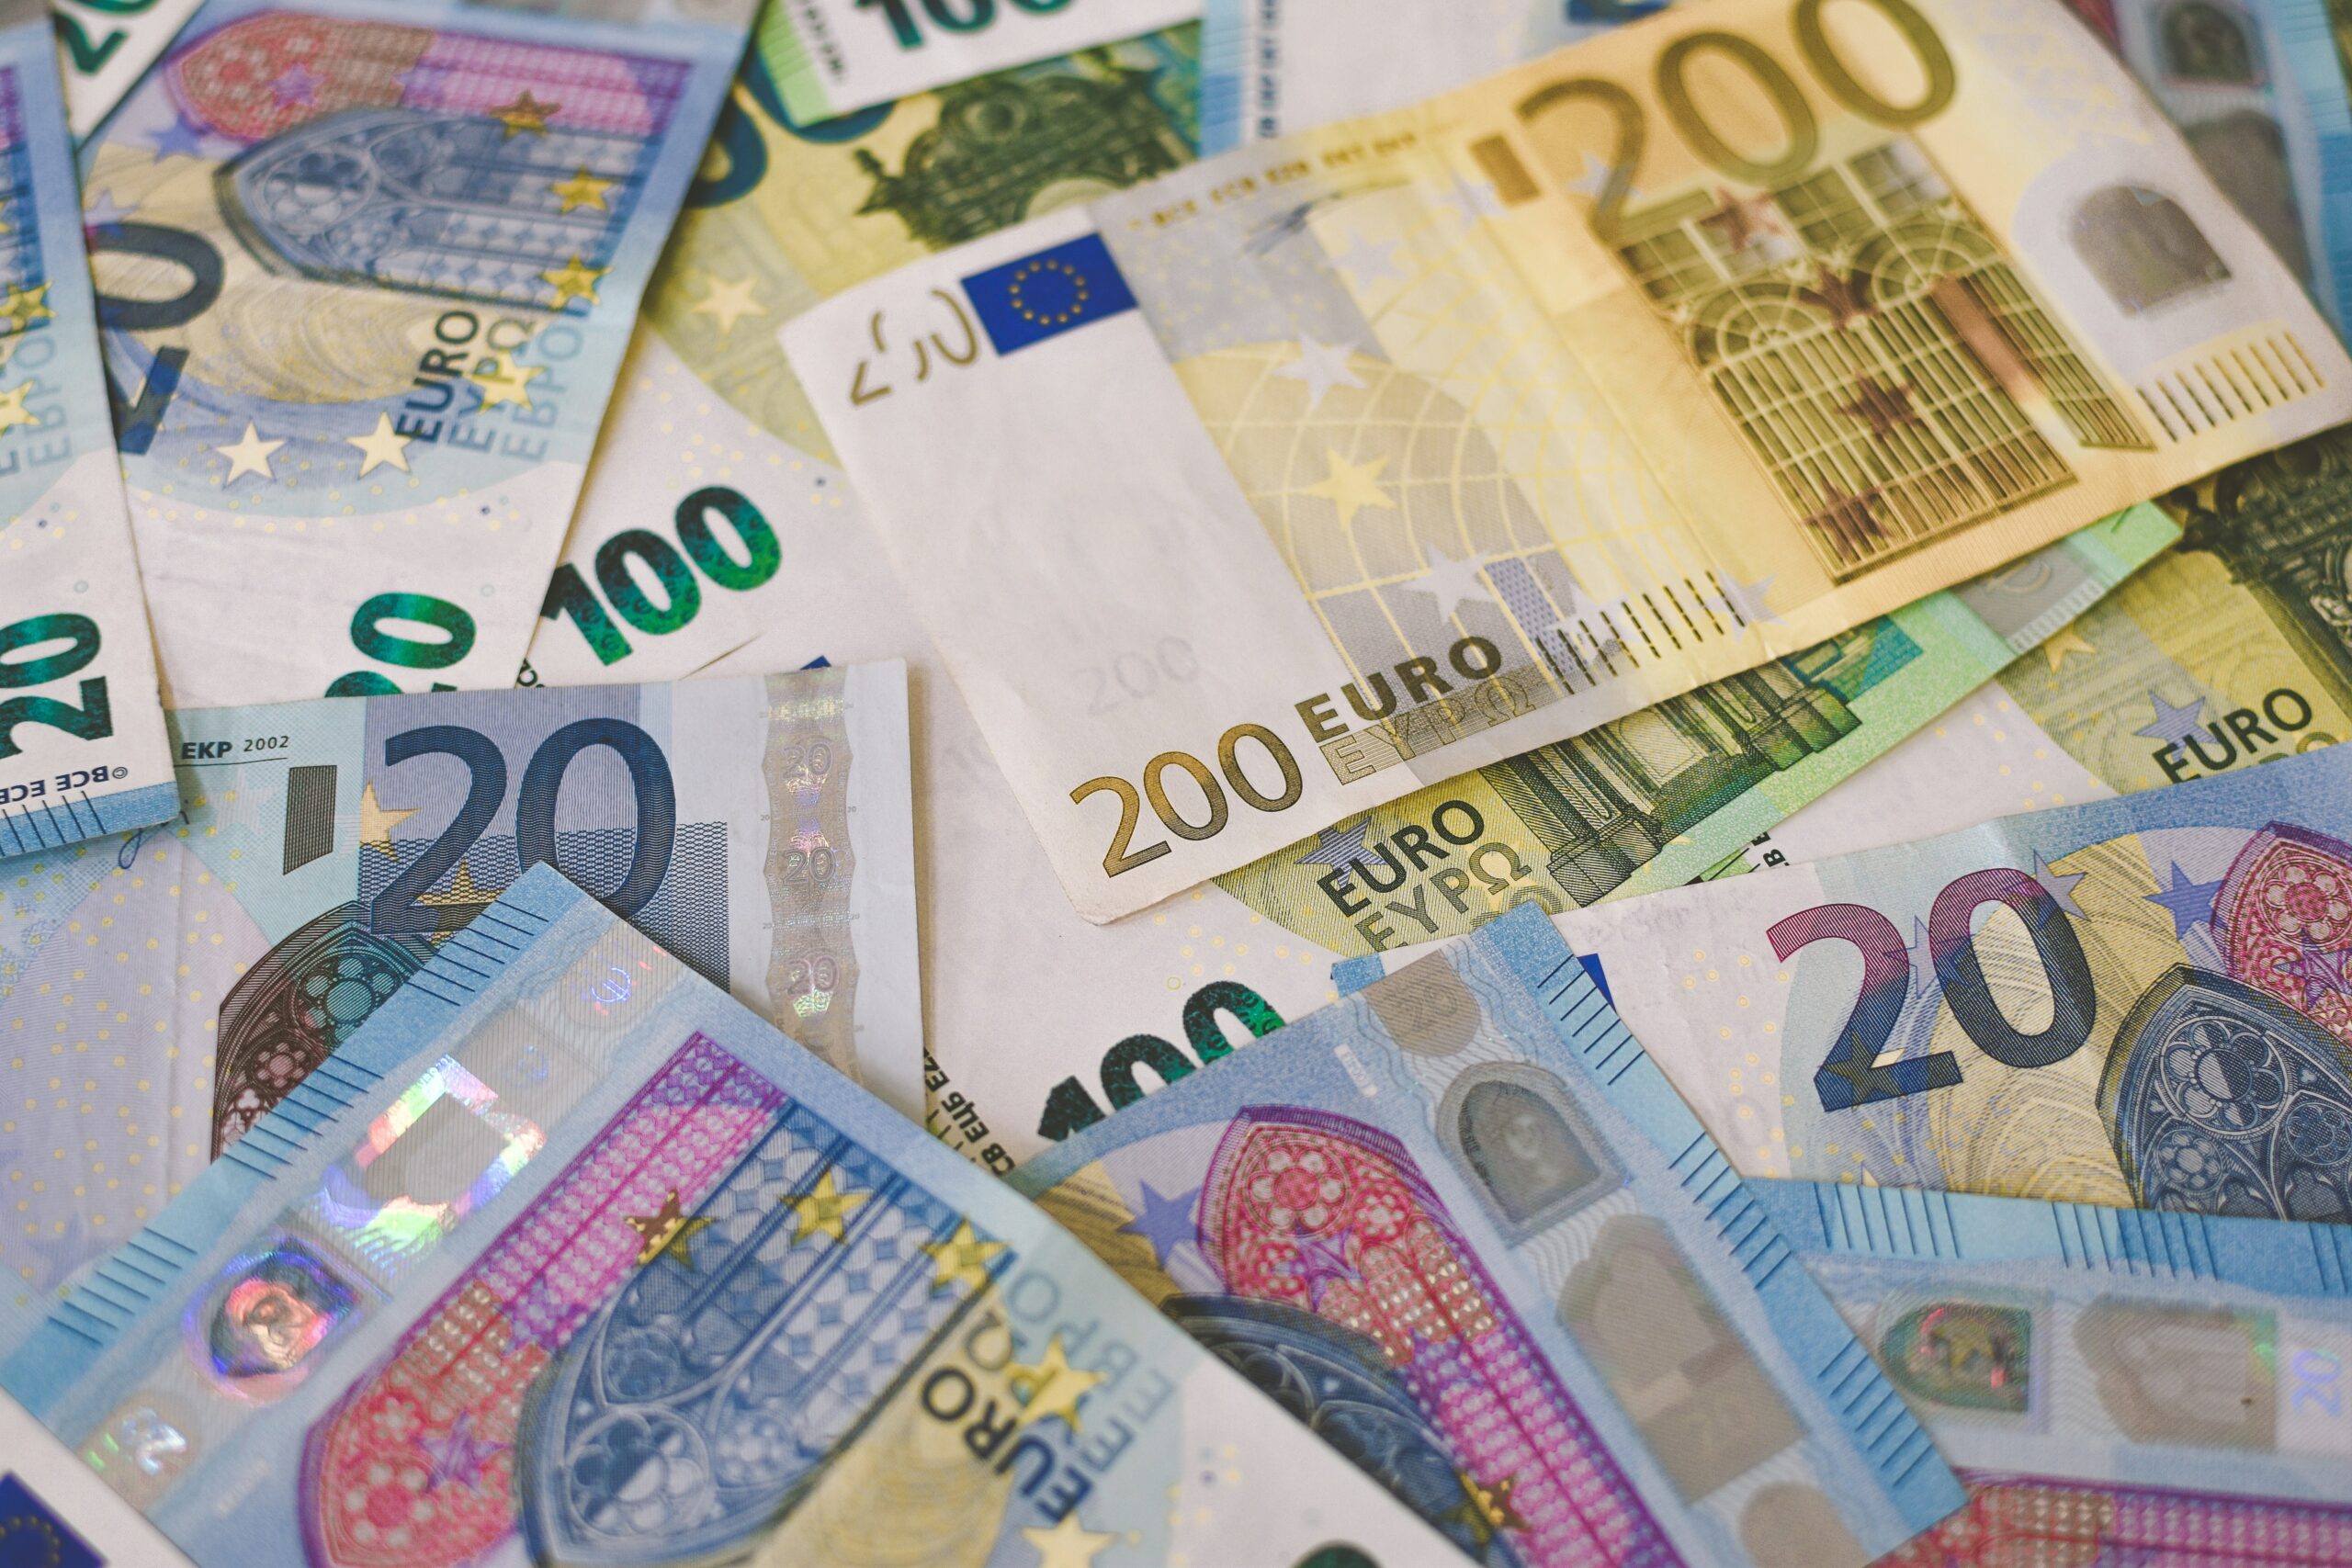 Nell'immagine si vedono delle banconote in euro